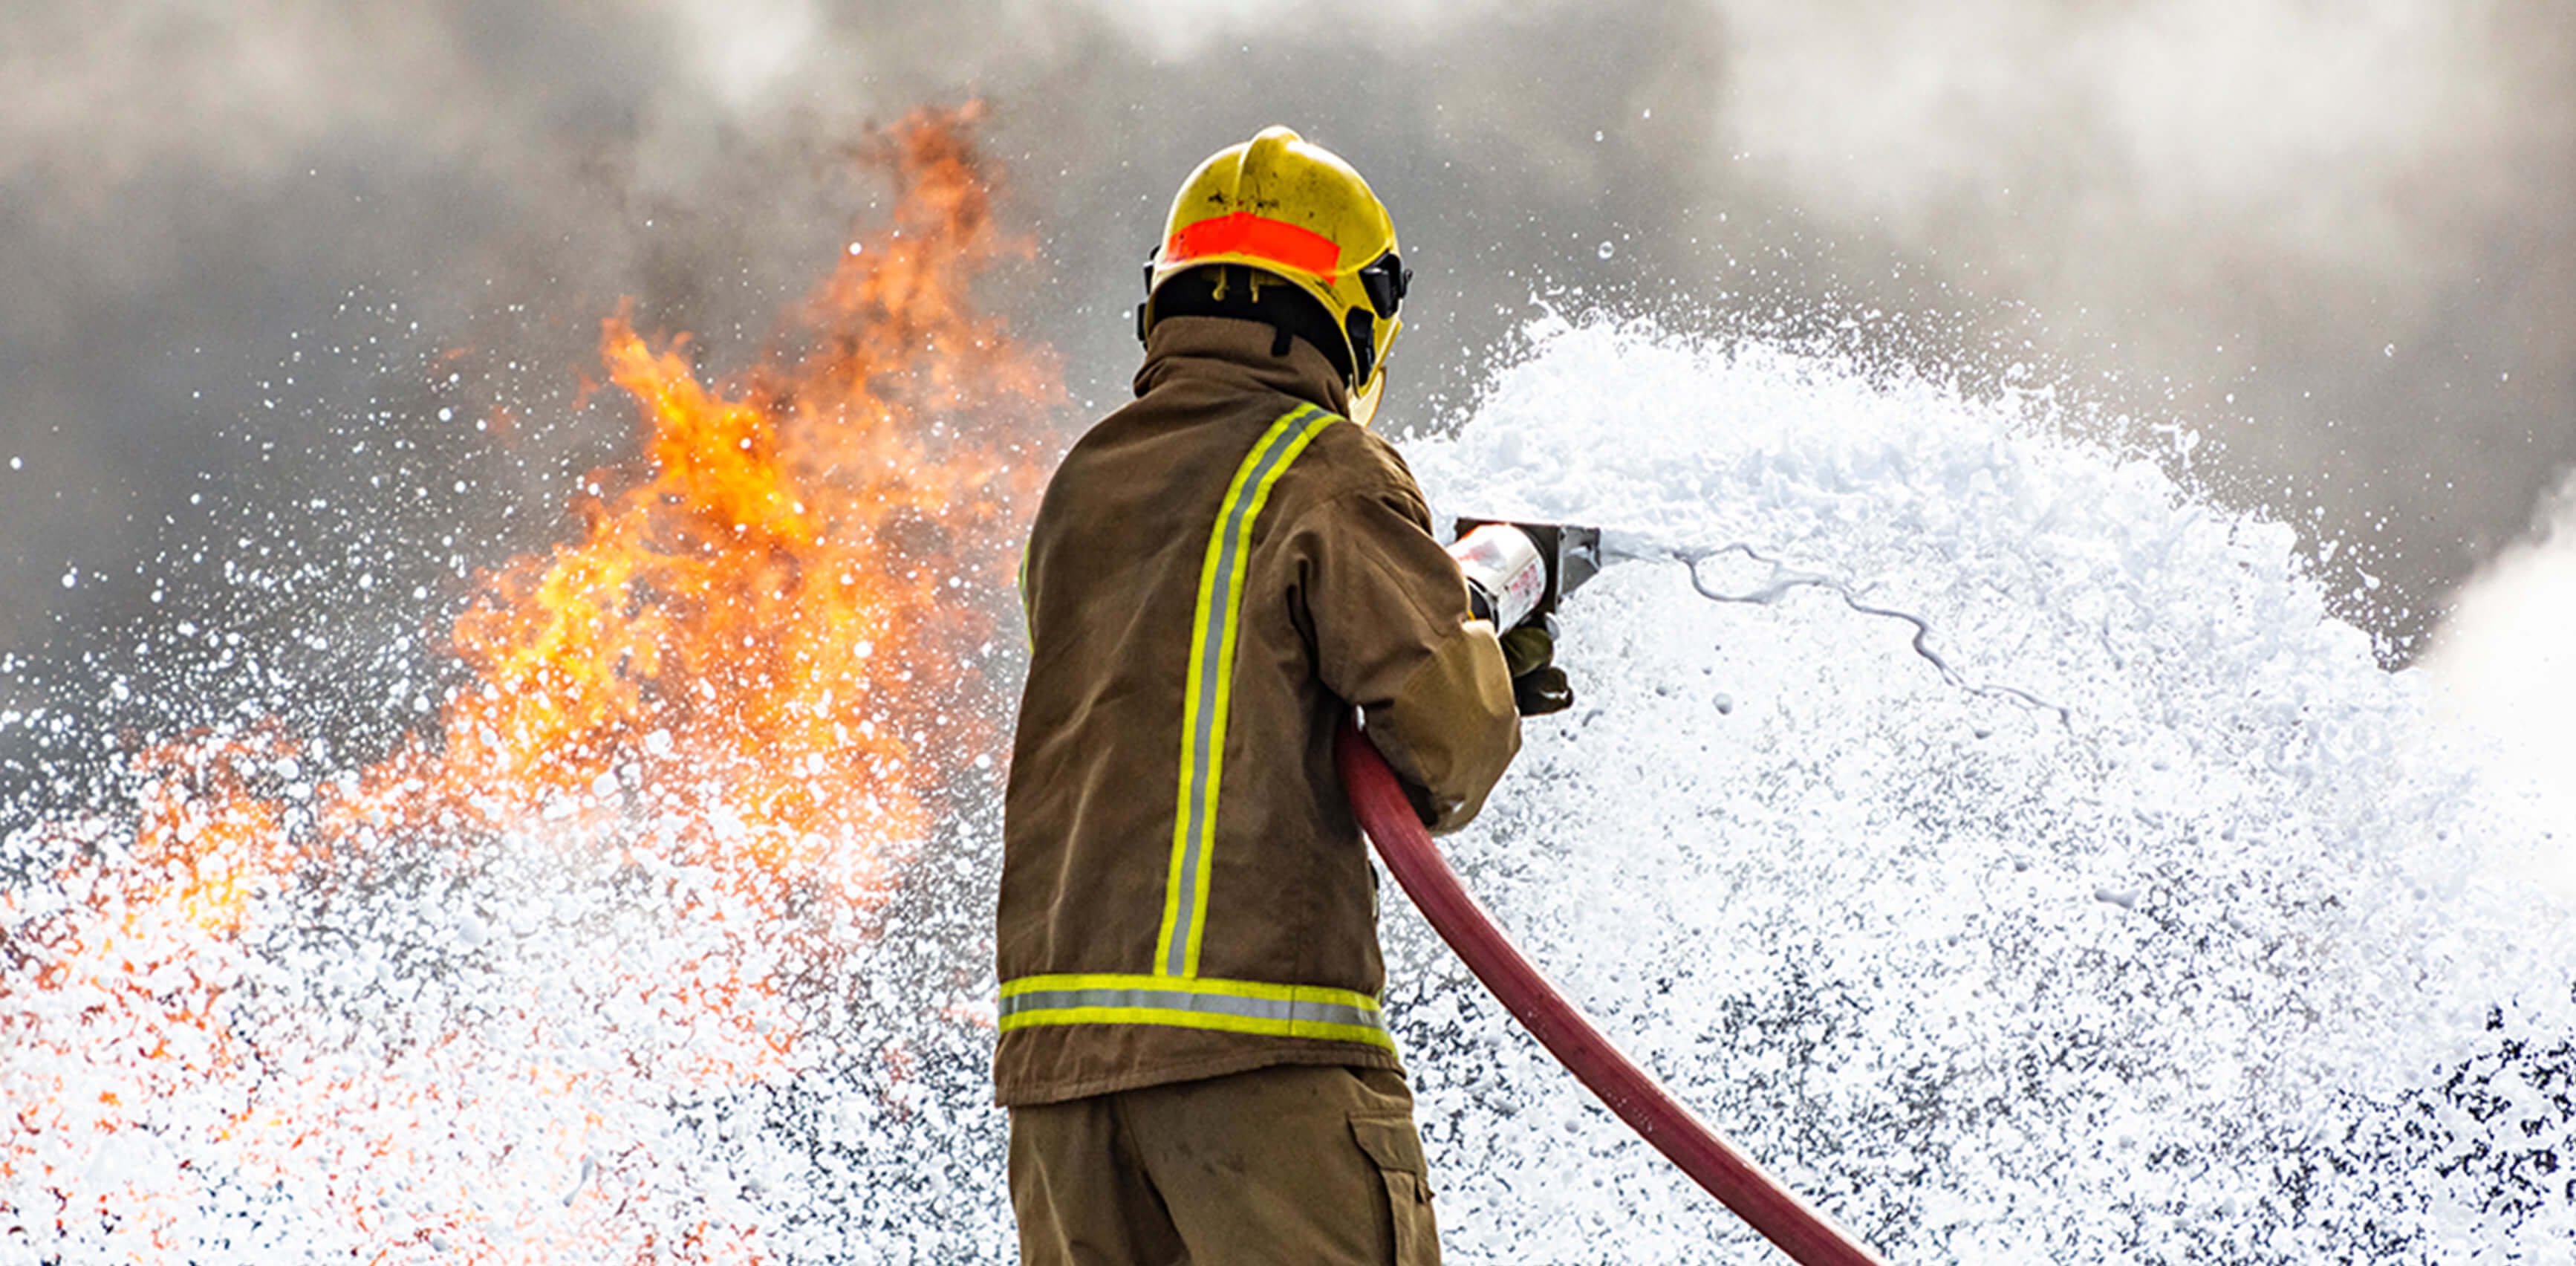 Harc a tűzzel - veszélyes, de népszerű hivatás